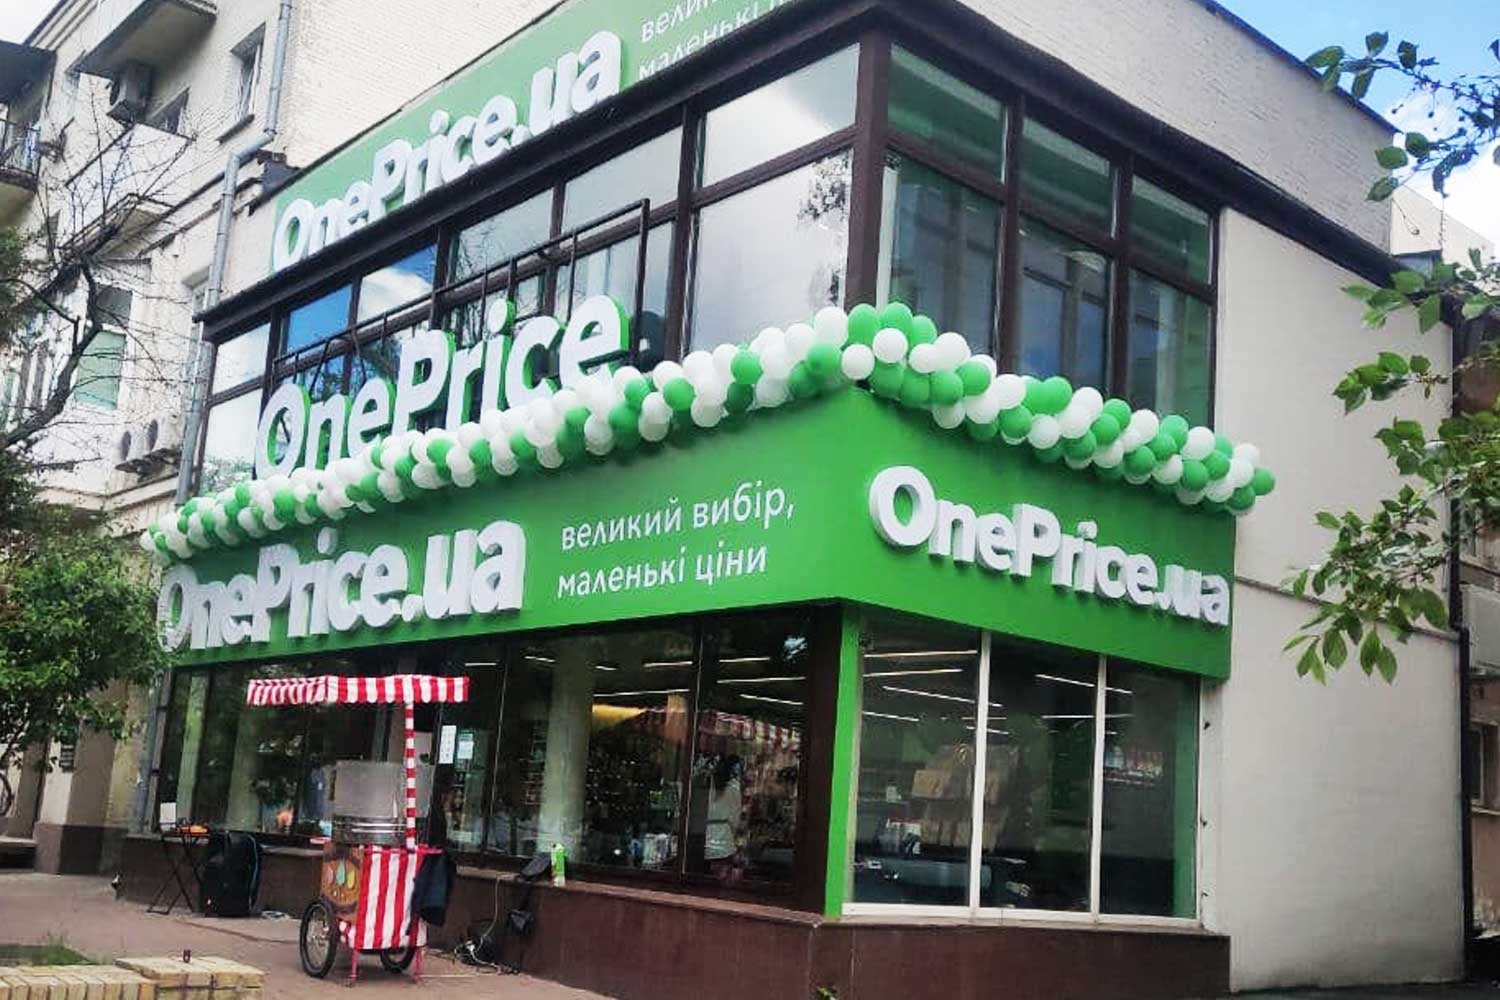 OnePrice in Odessa